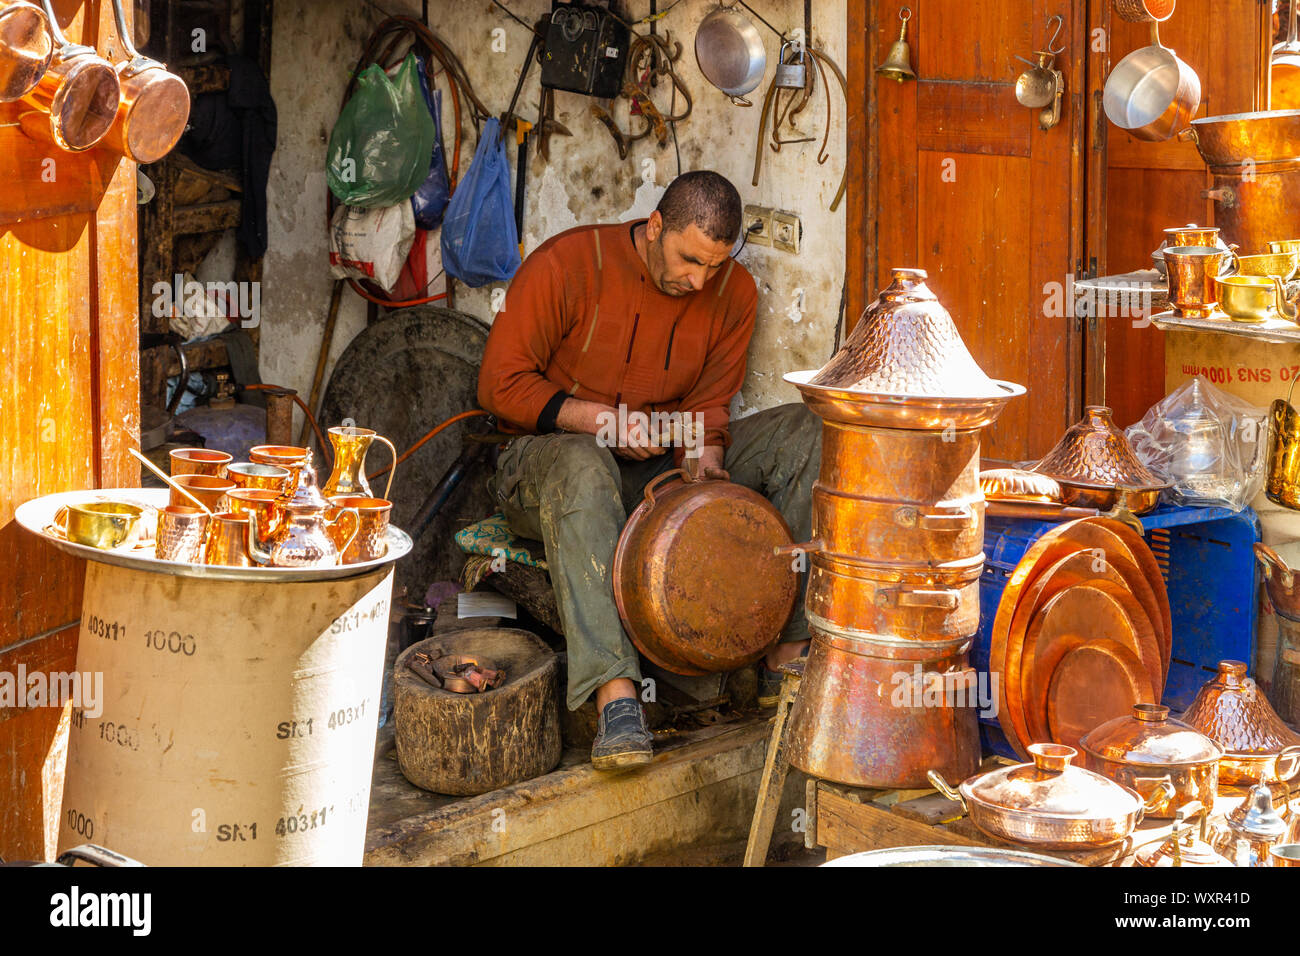 L'homme à un atelier/usine de production de produits en cuivre fait main, pots, bidons casseroles dans de nombreux styles différents, Fès, Maroc Banque D'Images